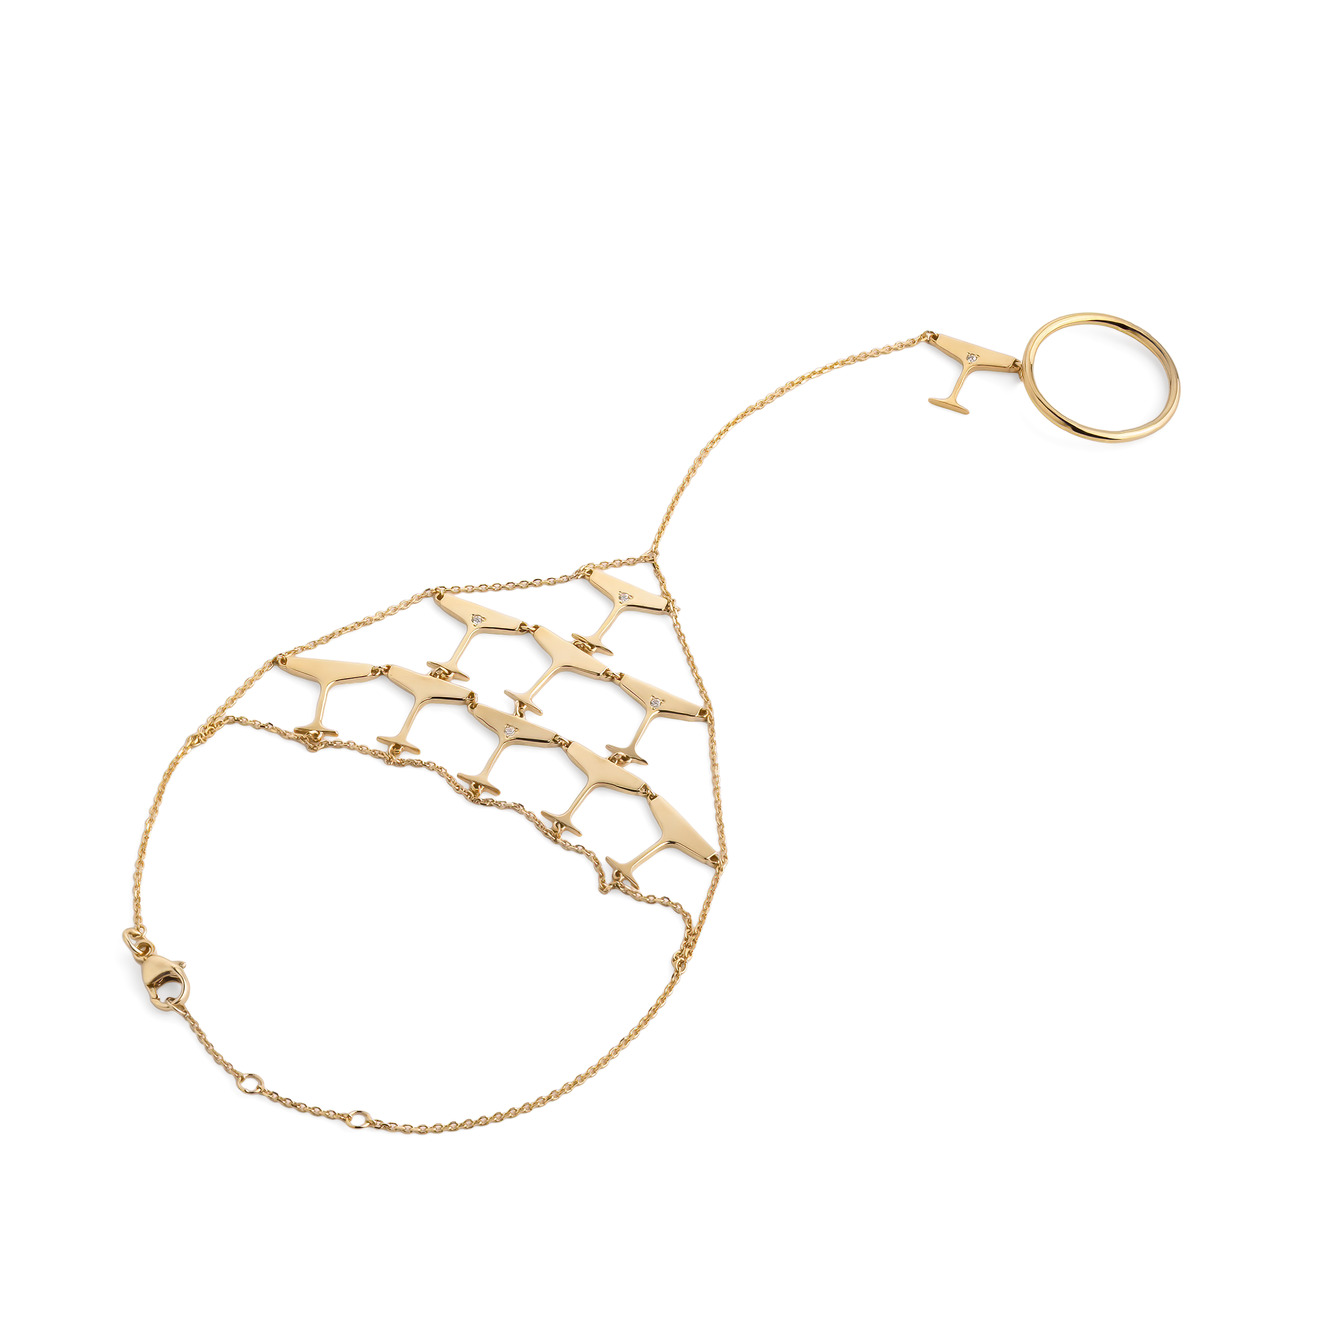 LUTA Jewelry Специальная коллекция Chandon x Poison Drop. Покрытый лимонным золотом браслет-слейв из серебра Sparkling luta jewelry покрытое розовым золотом колье из серебра sparkling